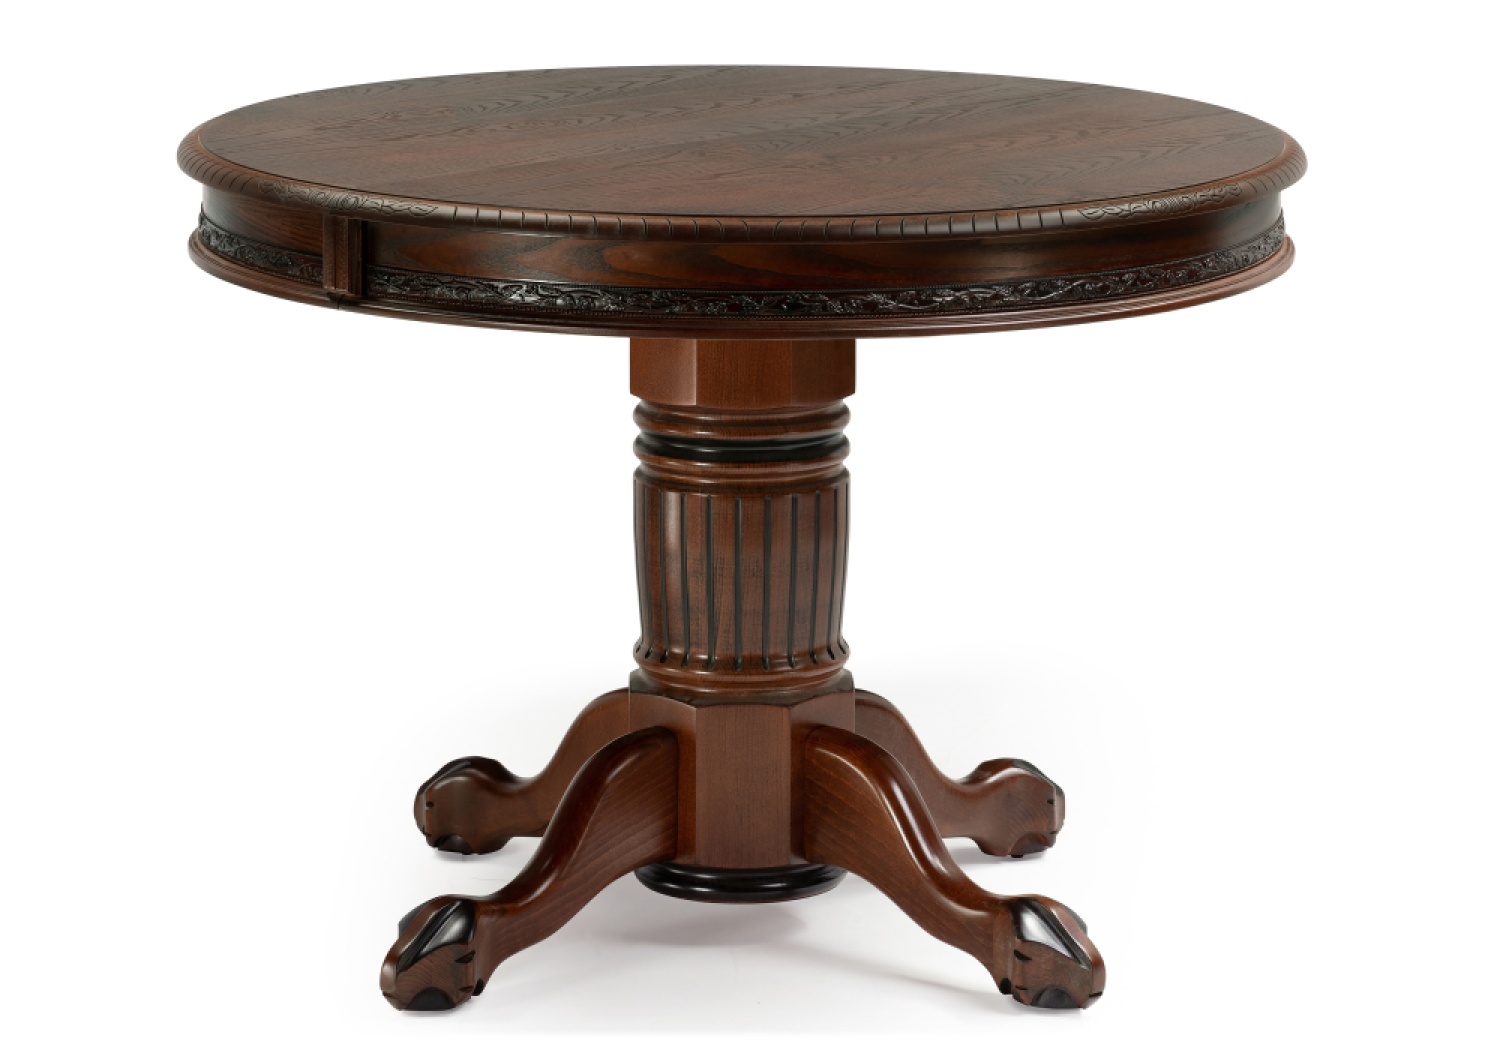 Деревянный стол Альфред 110(160)х110х80 орех / коричневая патина